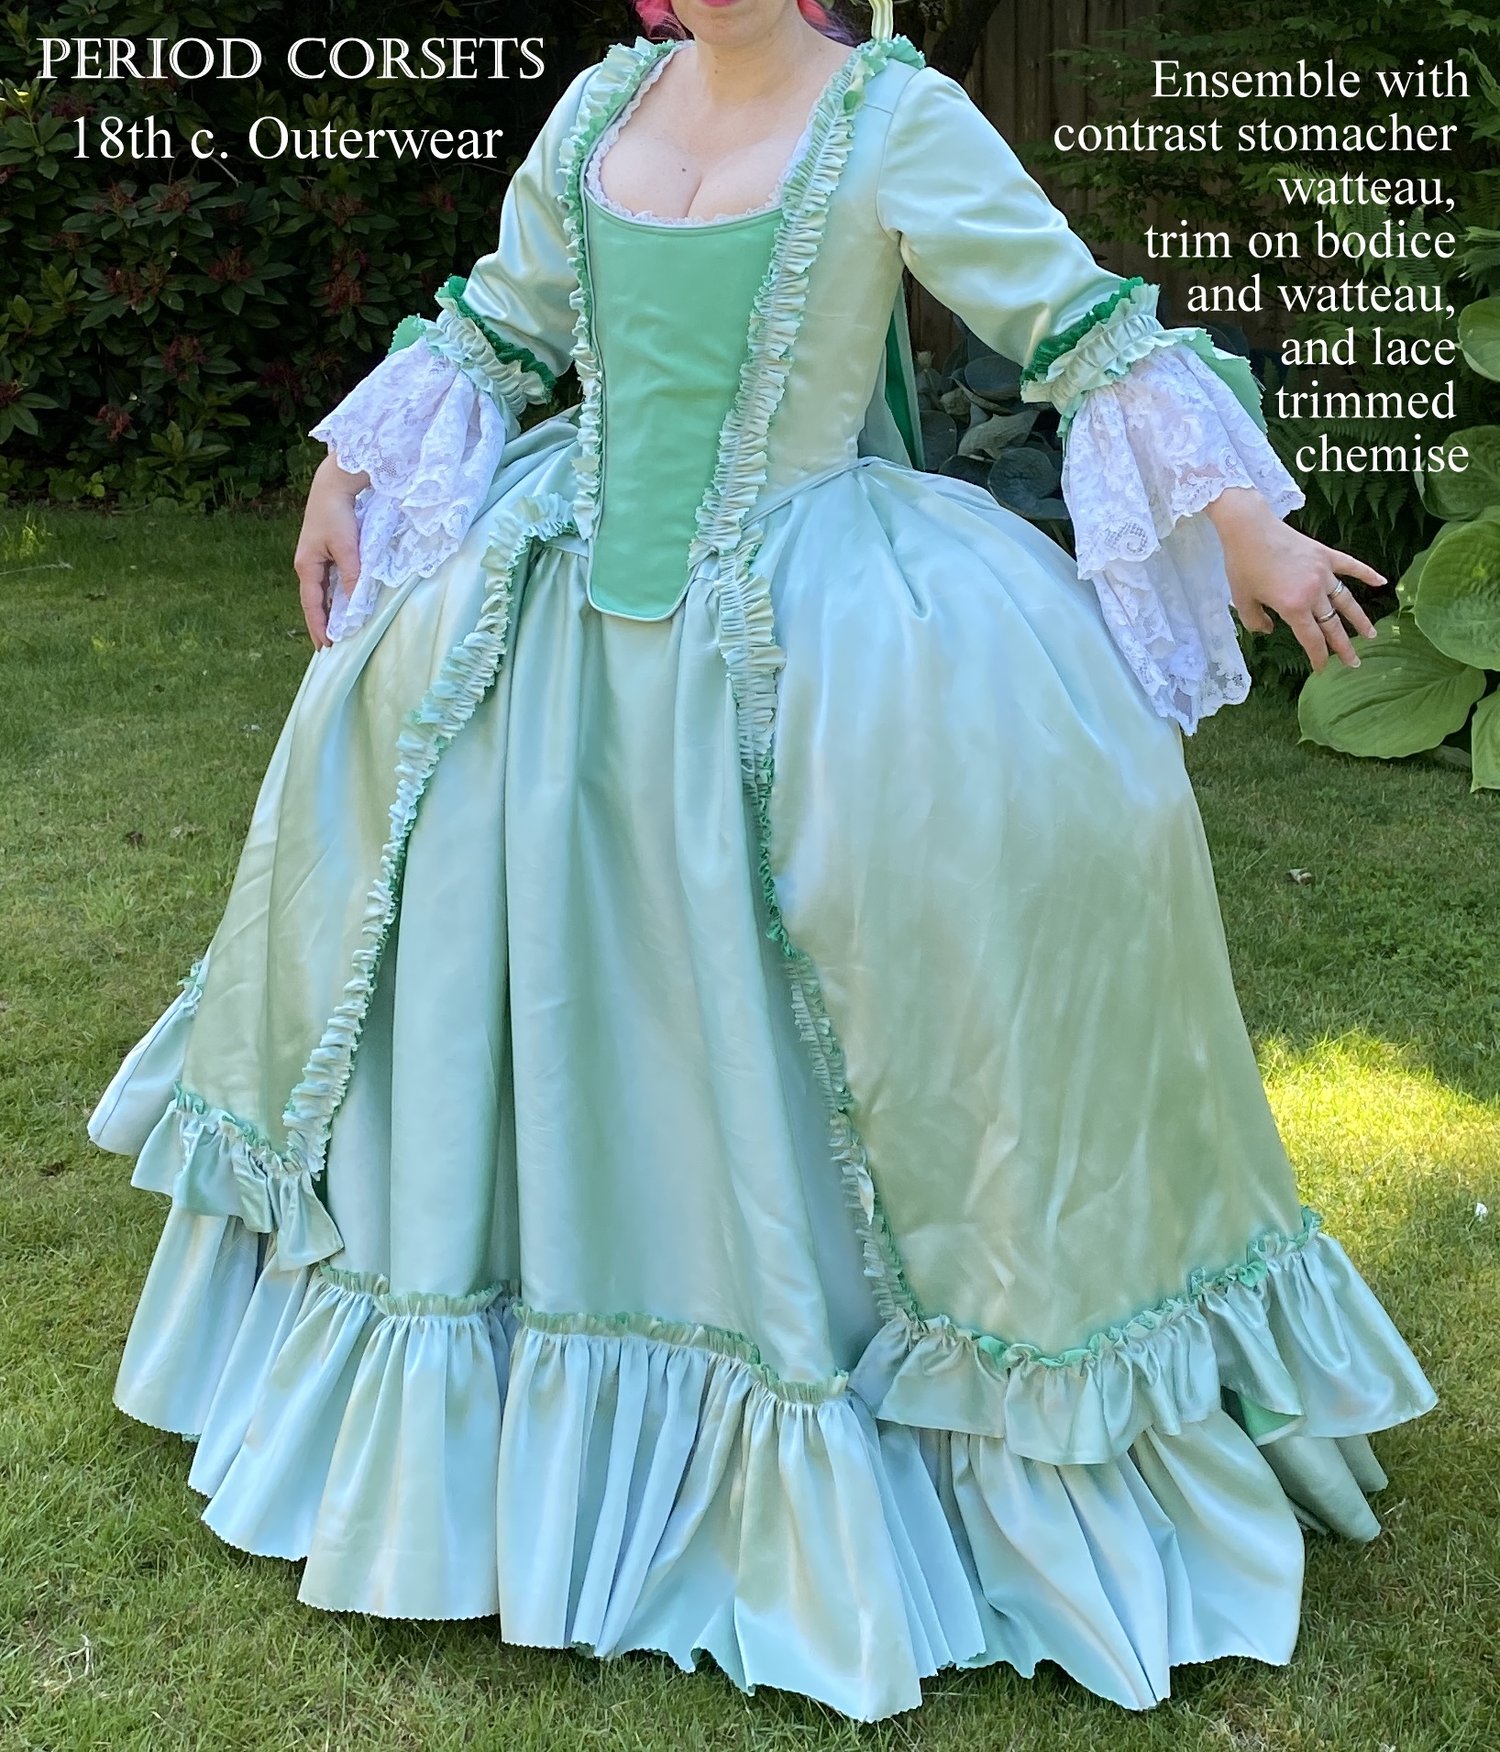 18th century Costume- Robe a la Française — Period Corsets